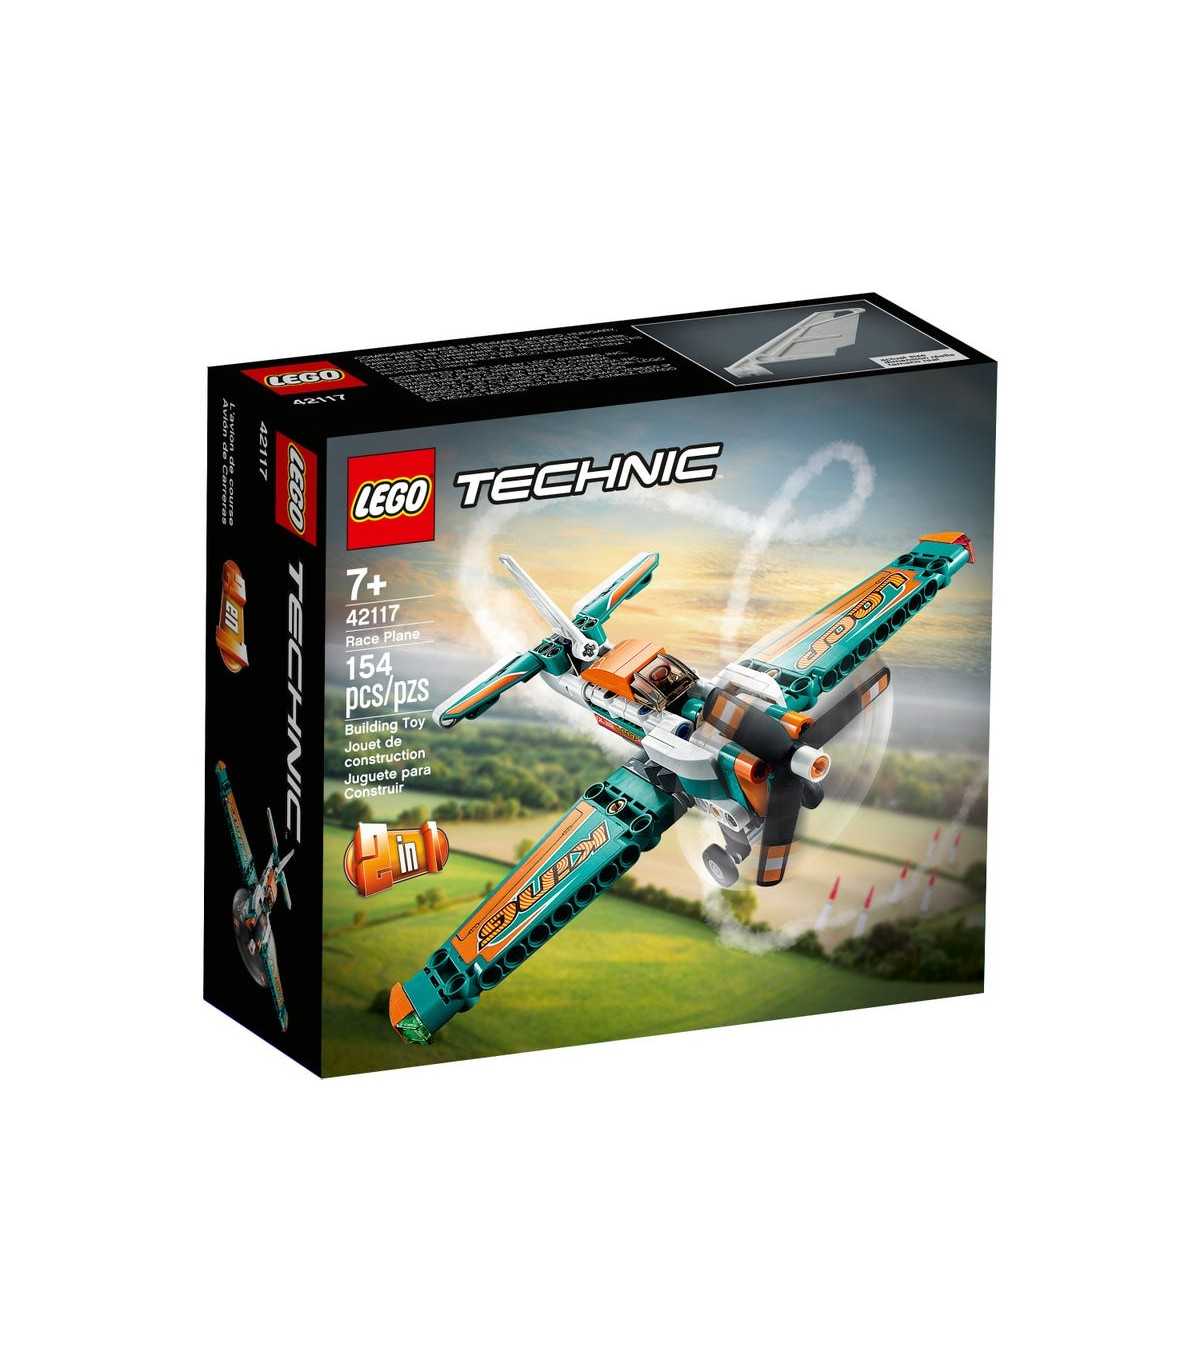 Lego - Aereo da competizione - 42117, Technic, Lego